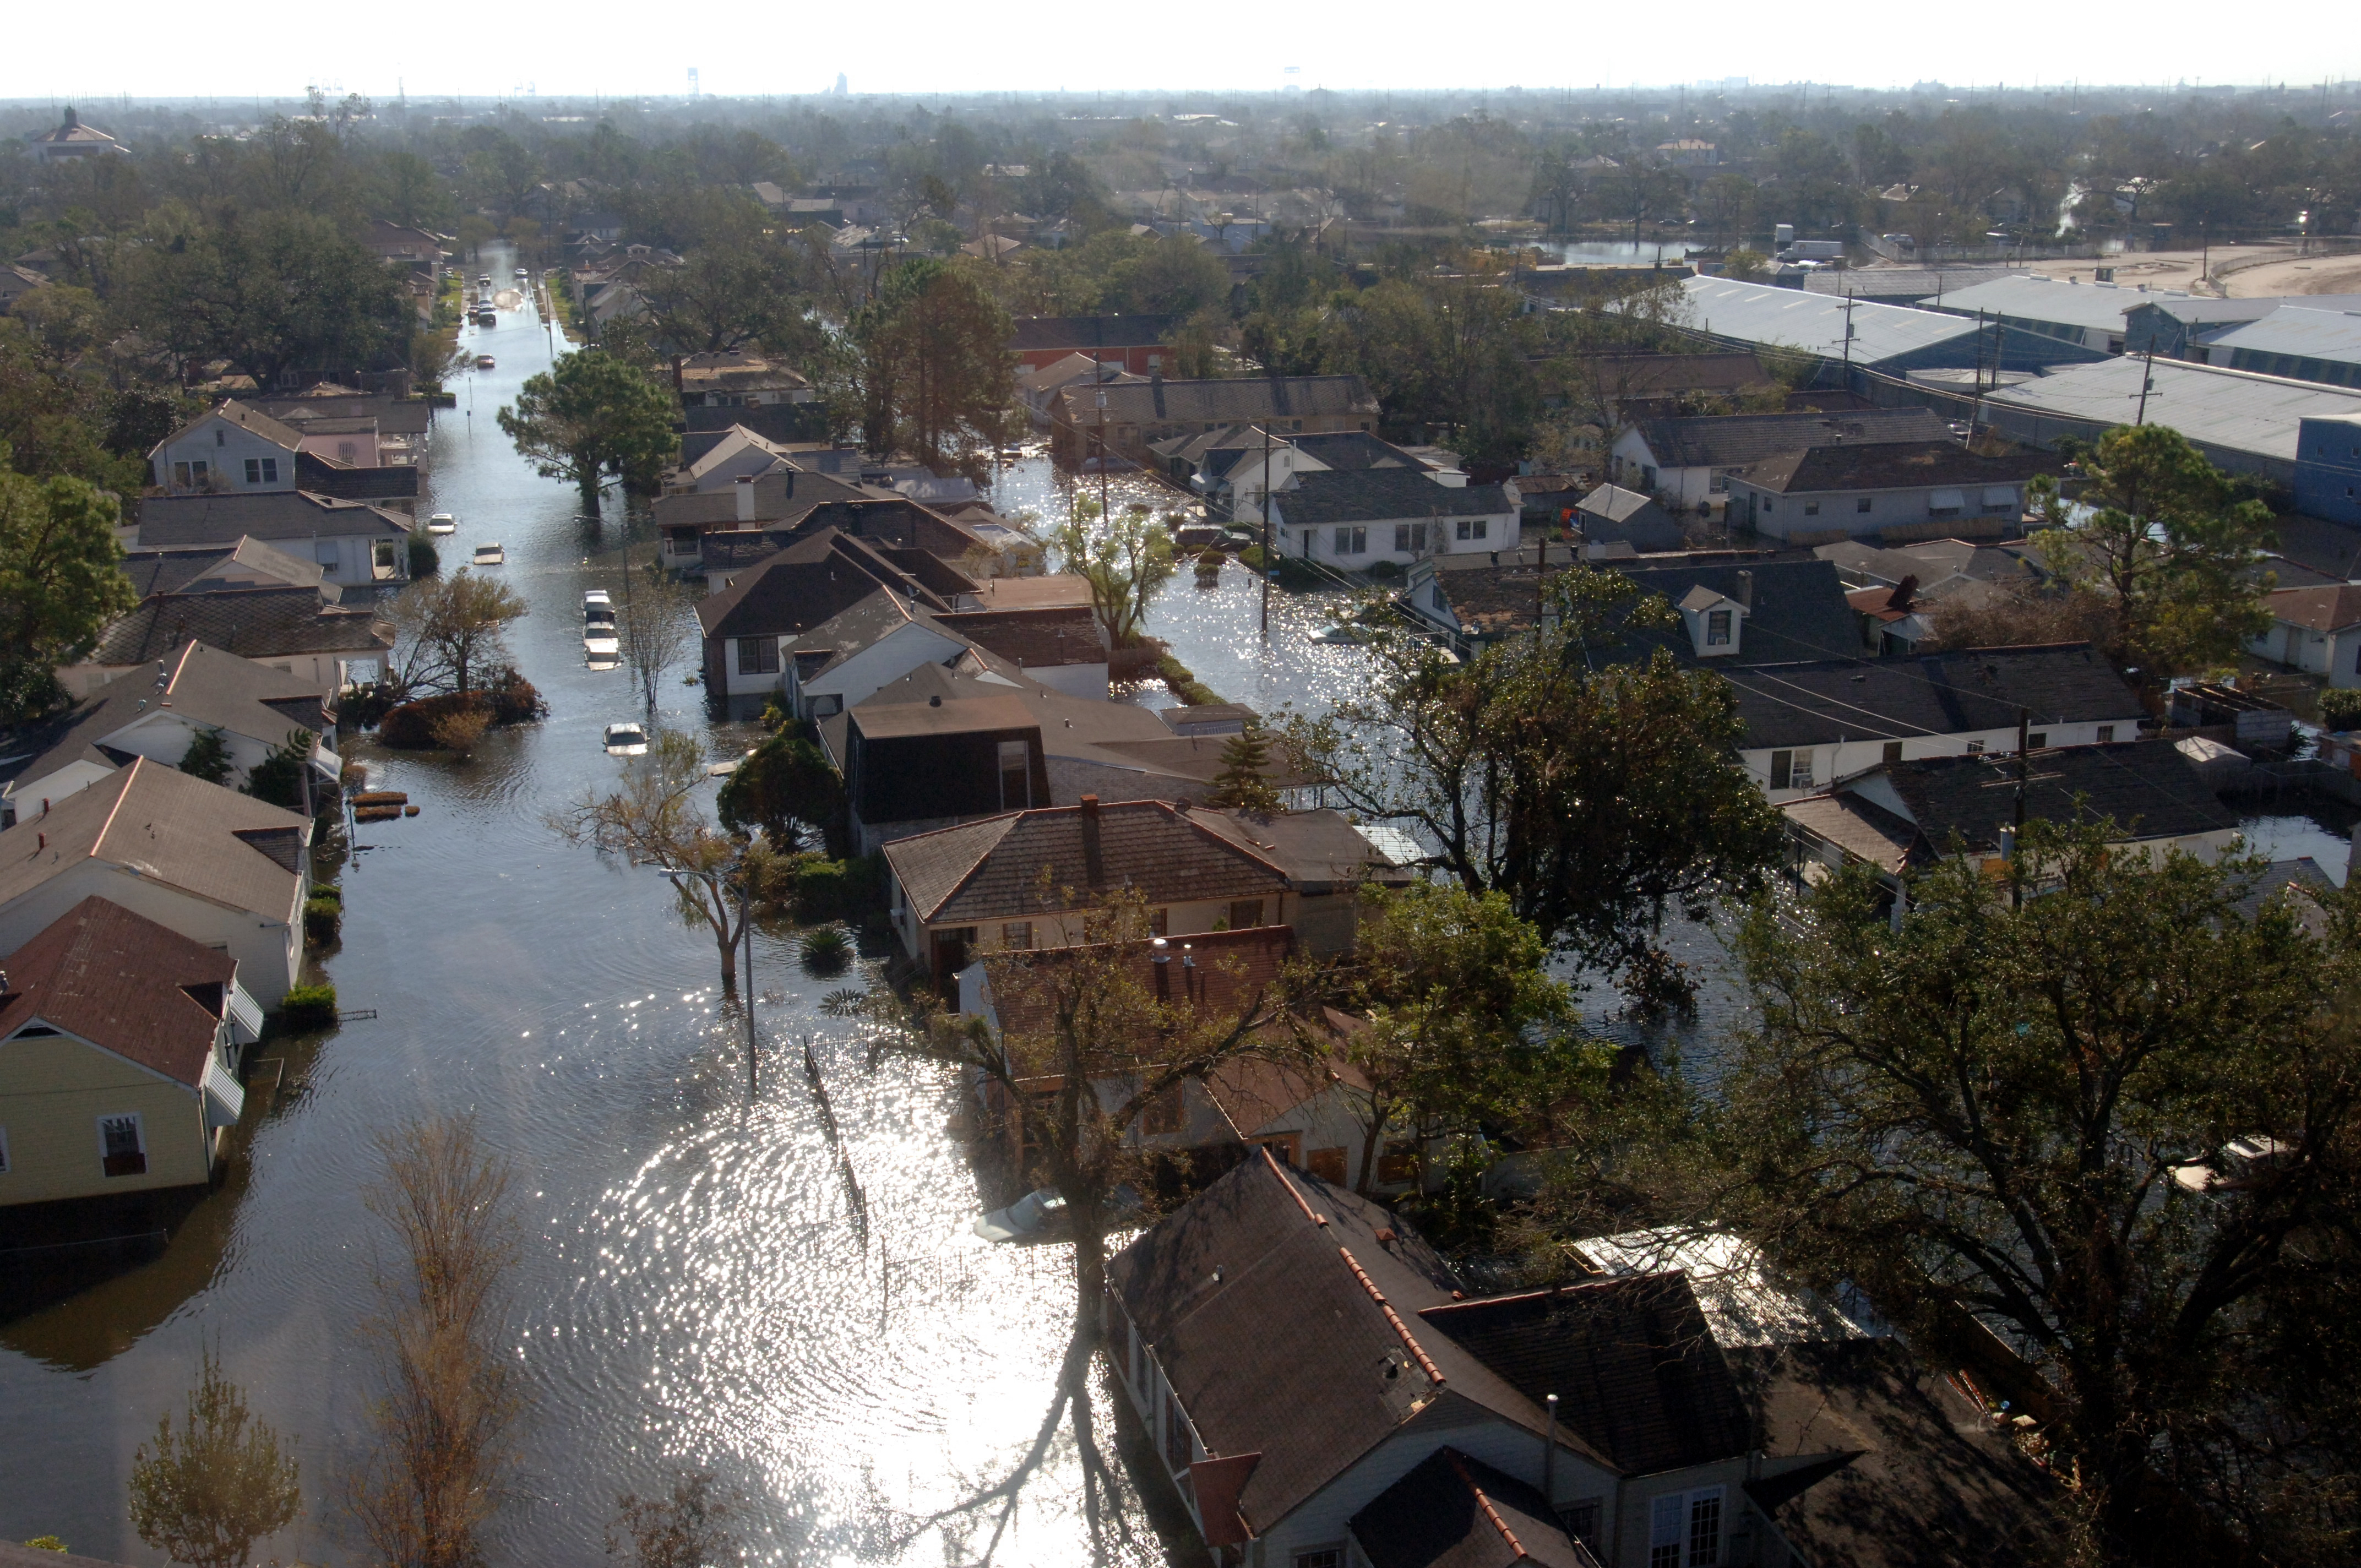 FEMA - 17752 - Photograph by Jocelyn Augustino taken on 09-07-2005 in Louisiana